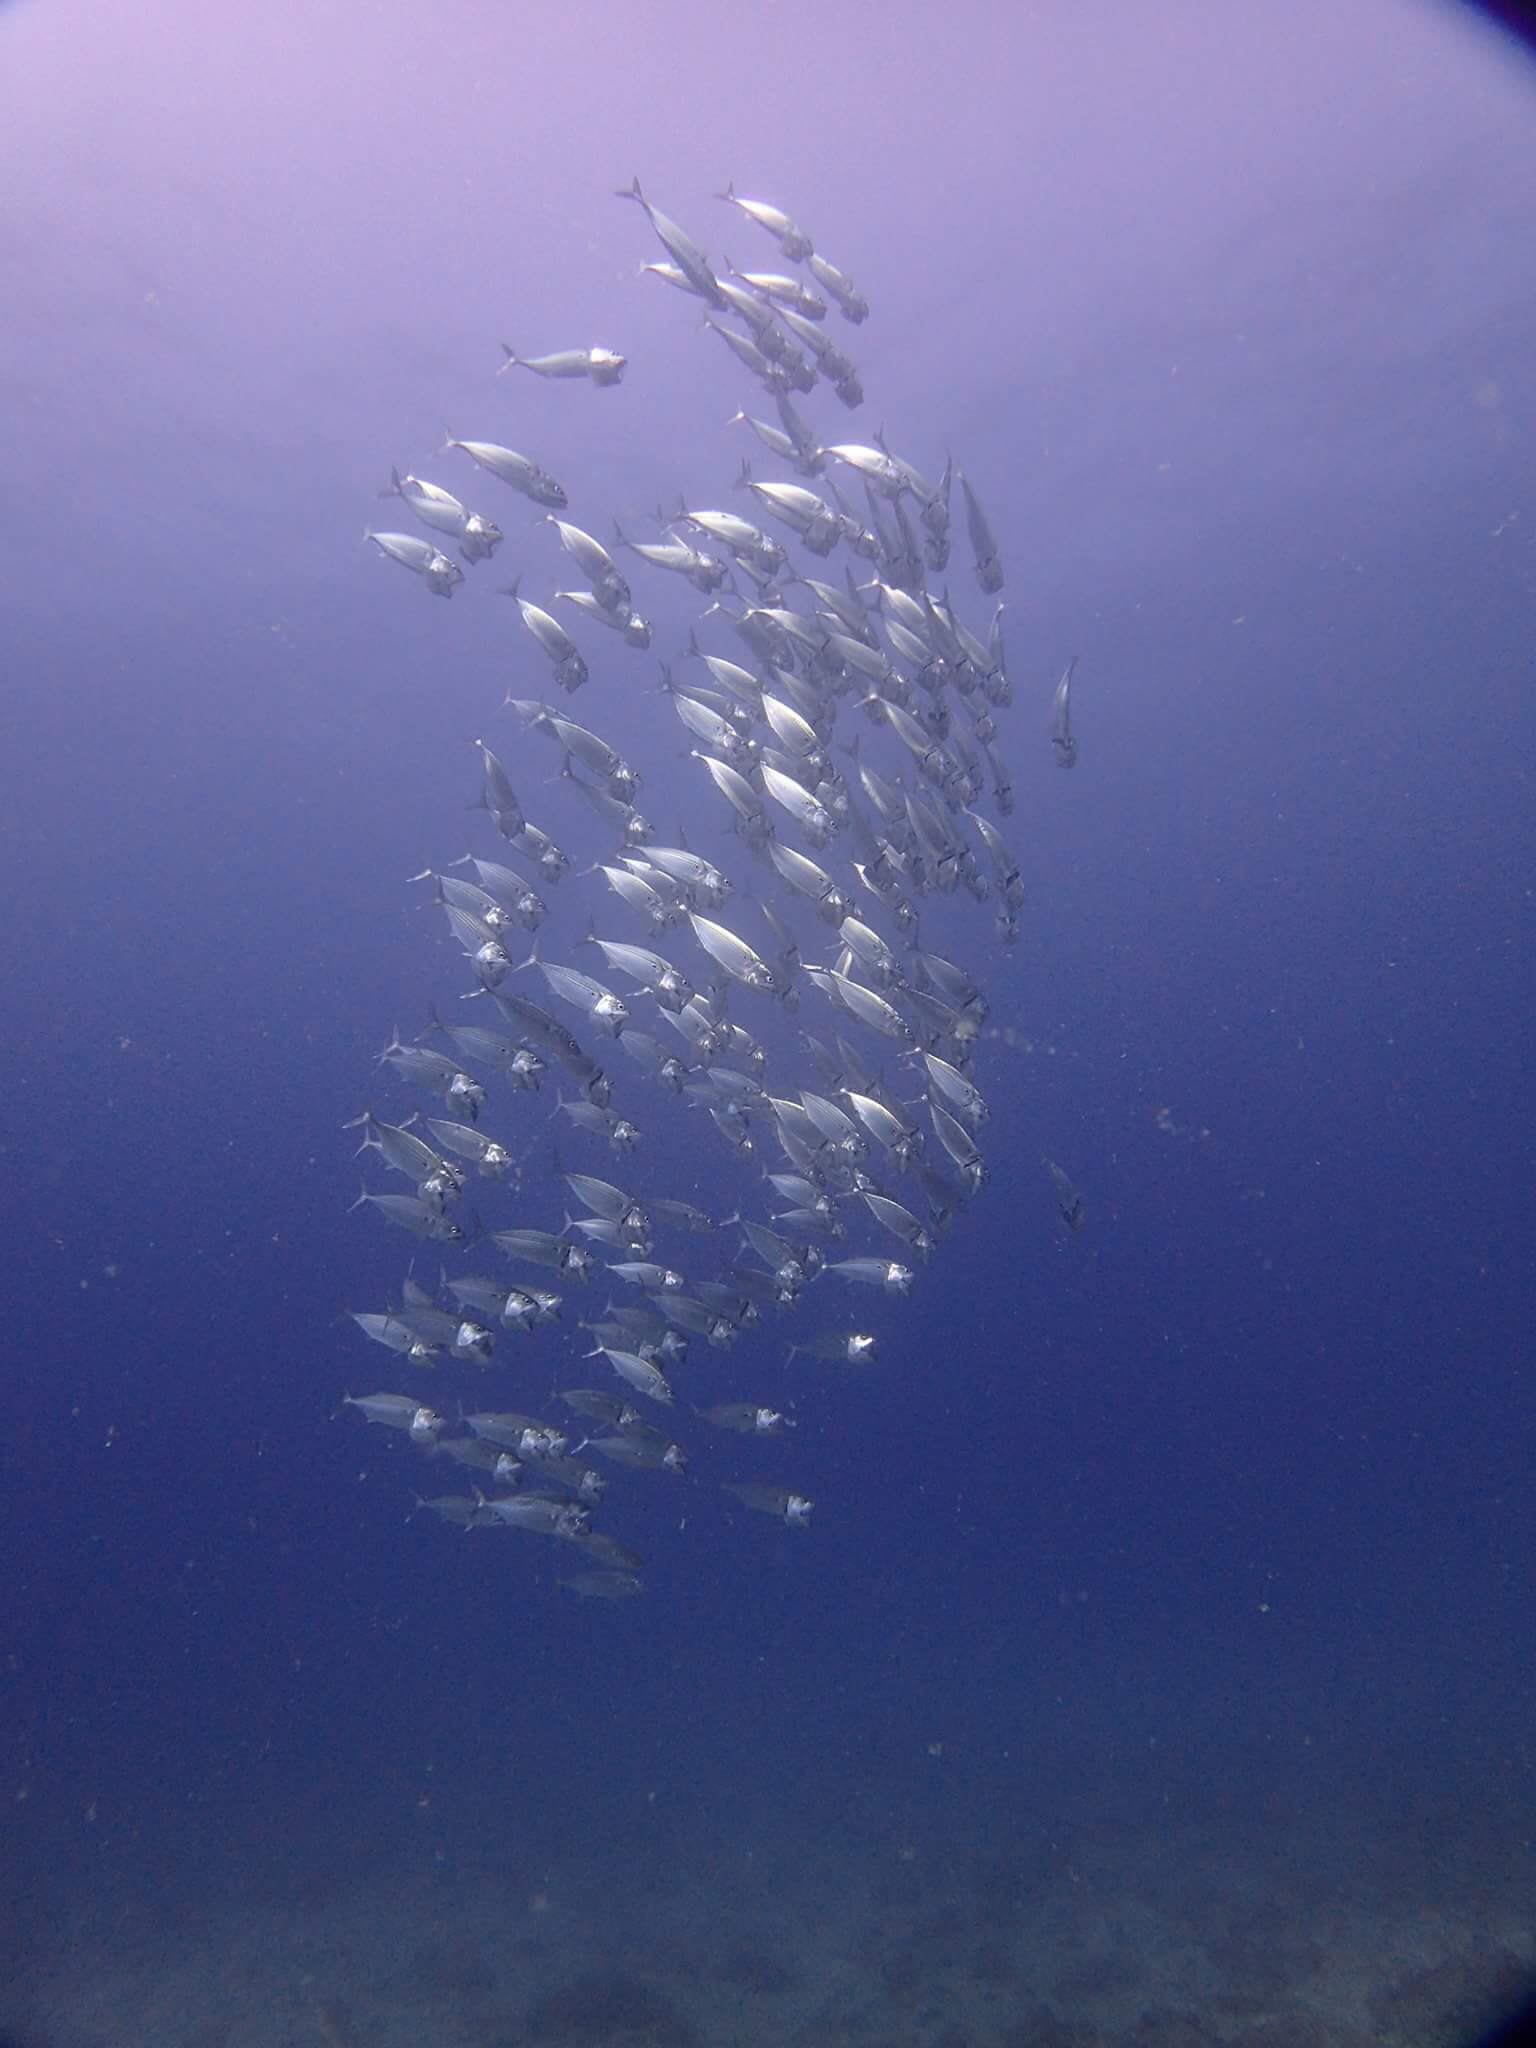 沖繩潛水 日本潛水 青之洞 okinawa diving